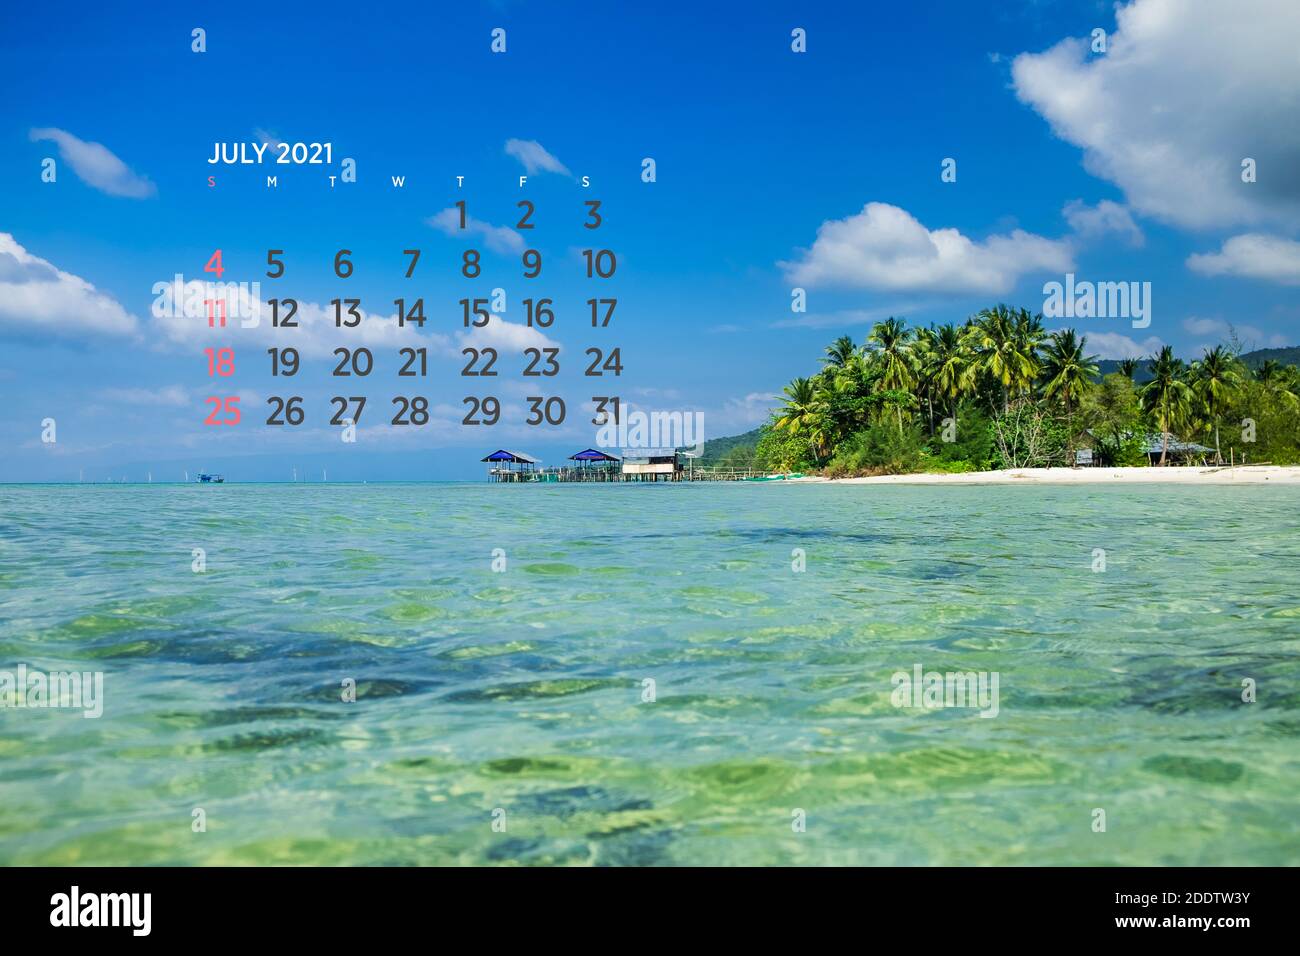 Calendrier juillet 2021. Mer, océan, plage, tropical, thème de la nature. A2. 60 x 40 cm. 15.75 x 23.62 pouces Banque D'Images